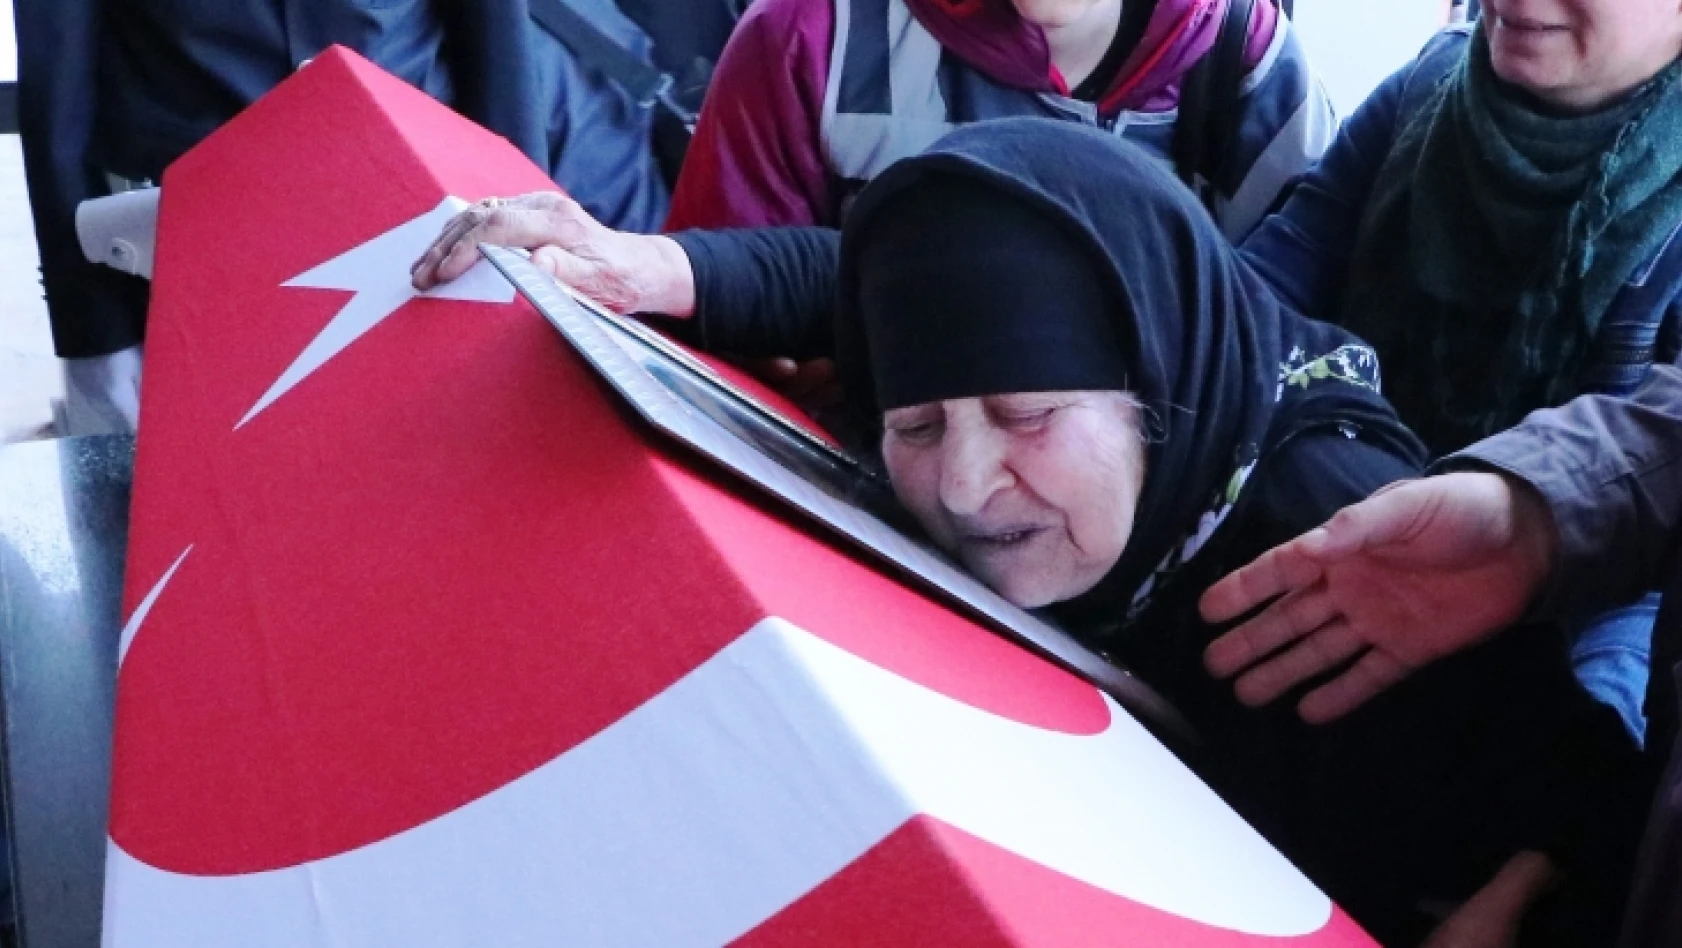 Şehit polisler için cenaze töreni düzenlendi (Fotoğraflar)